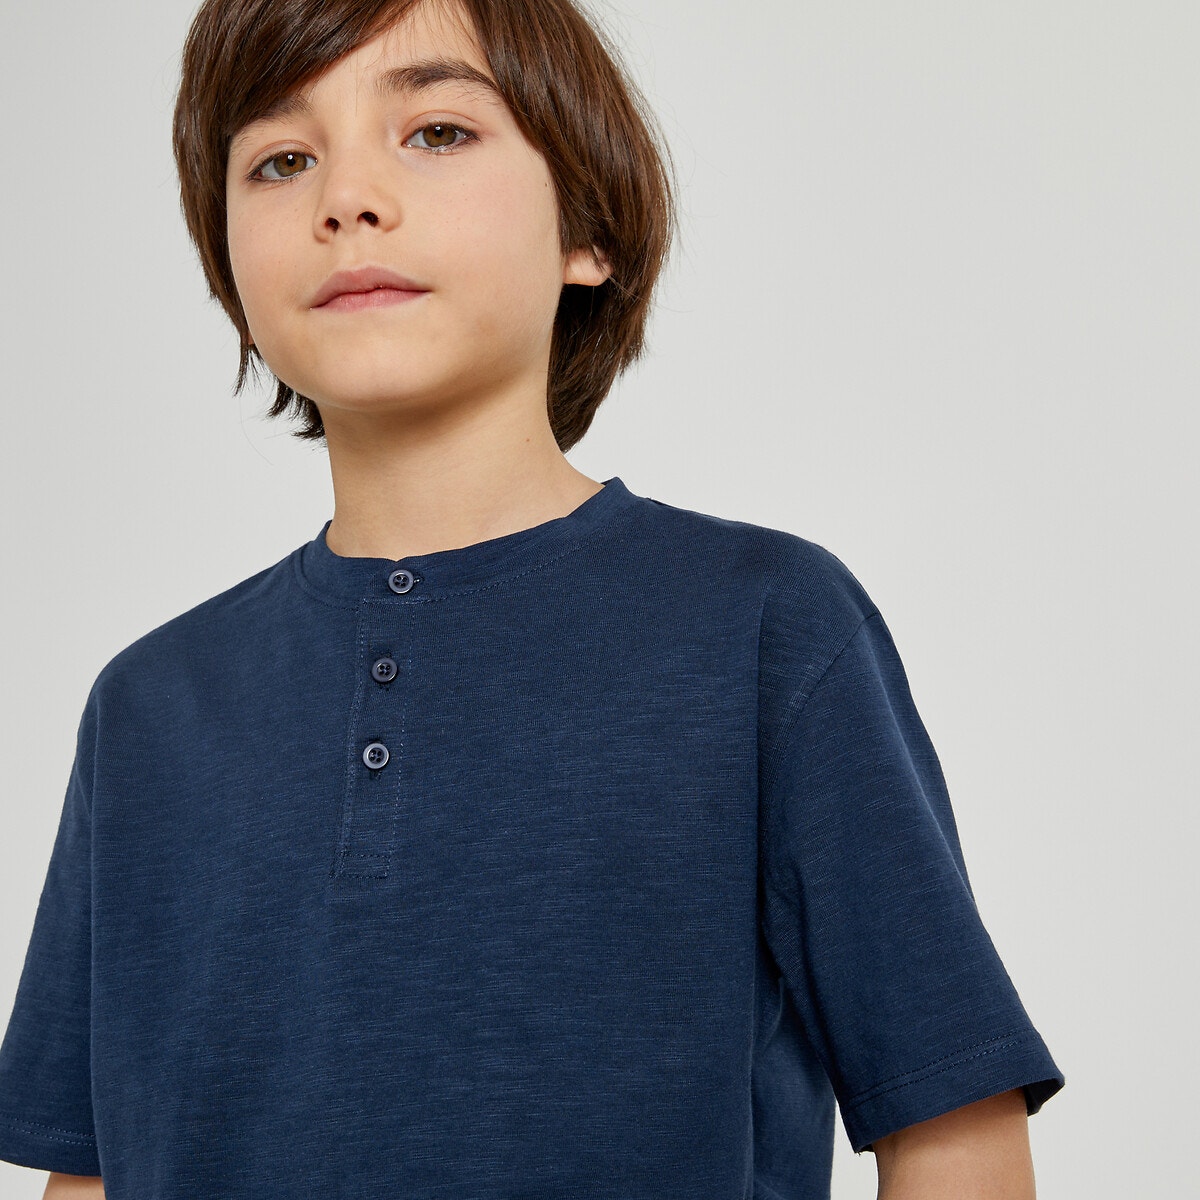 Μόδα > Παιδικά > Αγόρι > T-shirt, πόλο > Κοντά μανίκια Μπλούζα με λαιμόκοψη κελεμπίας